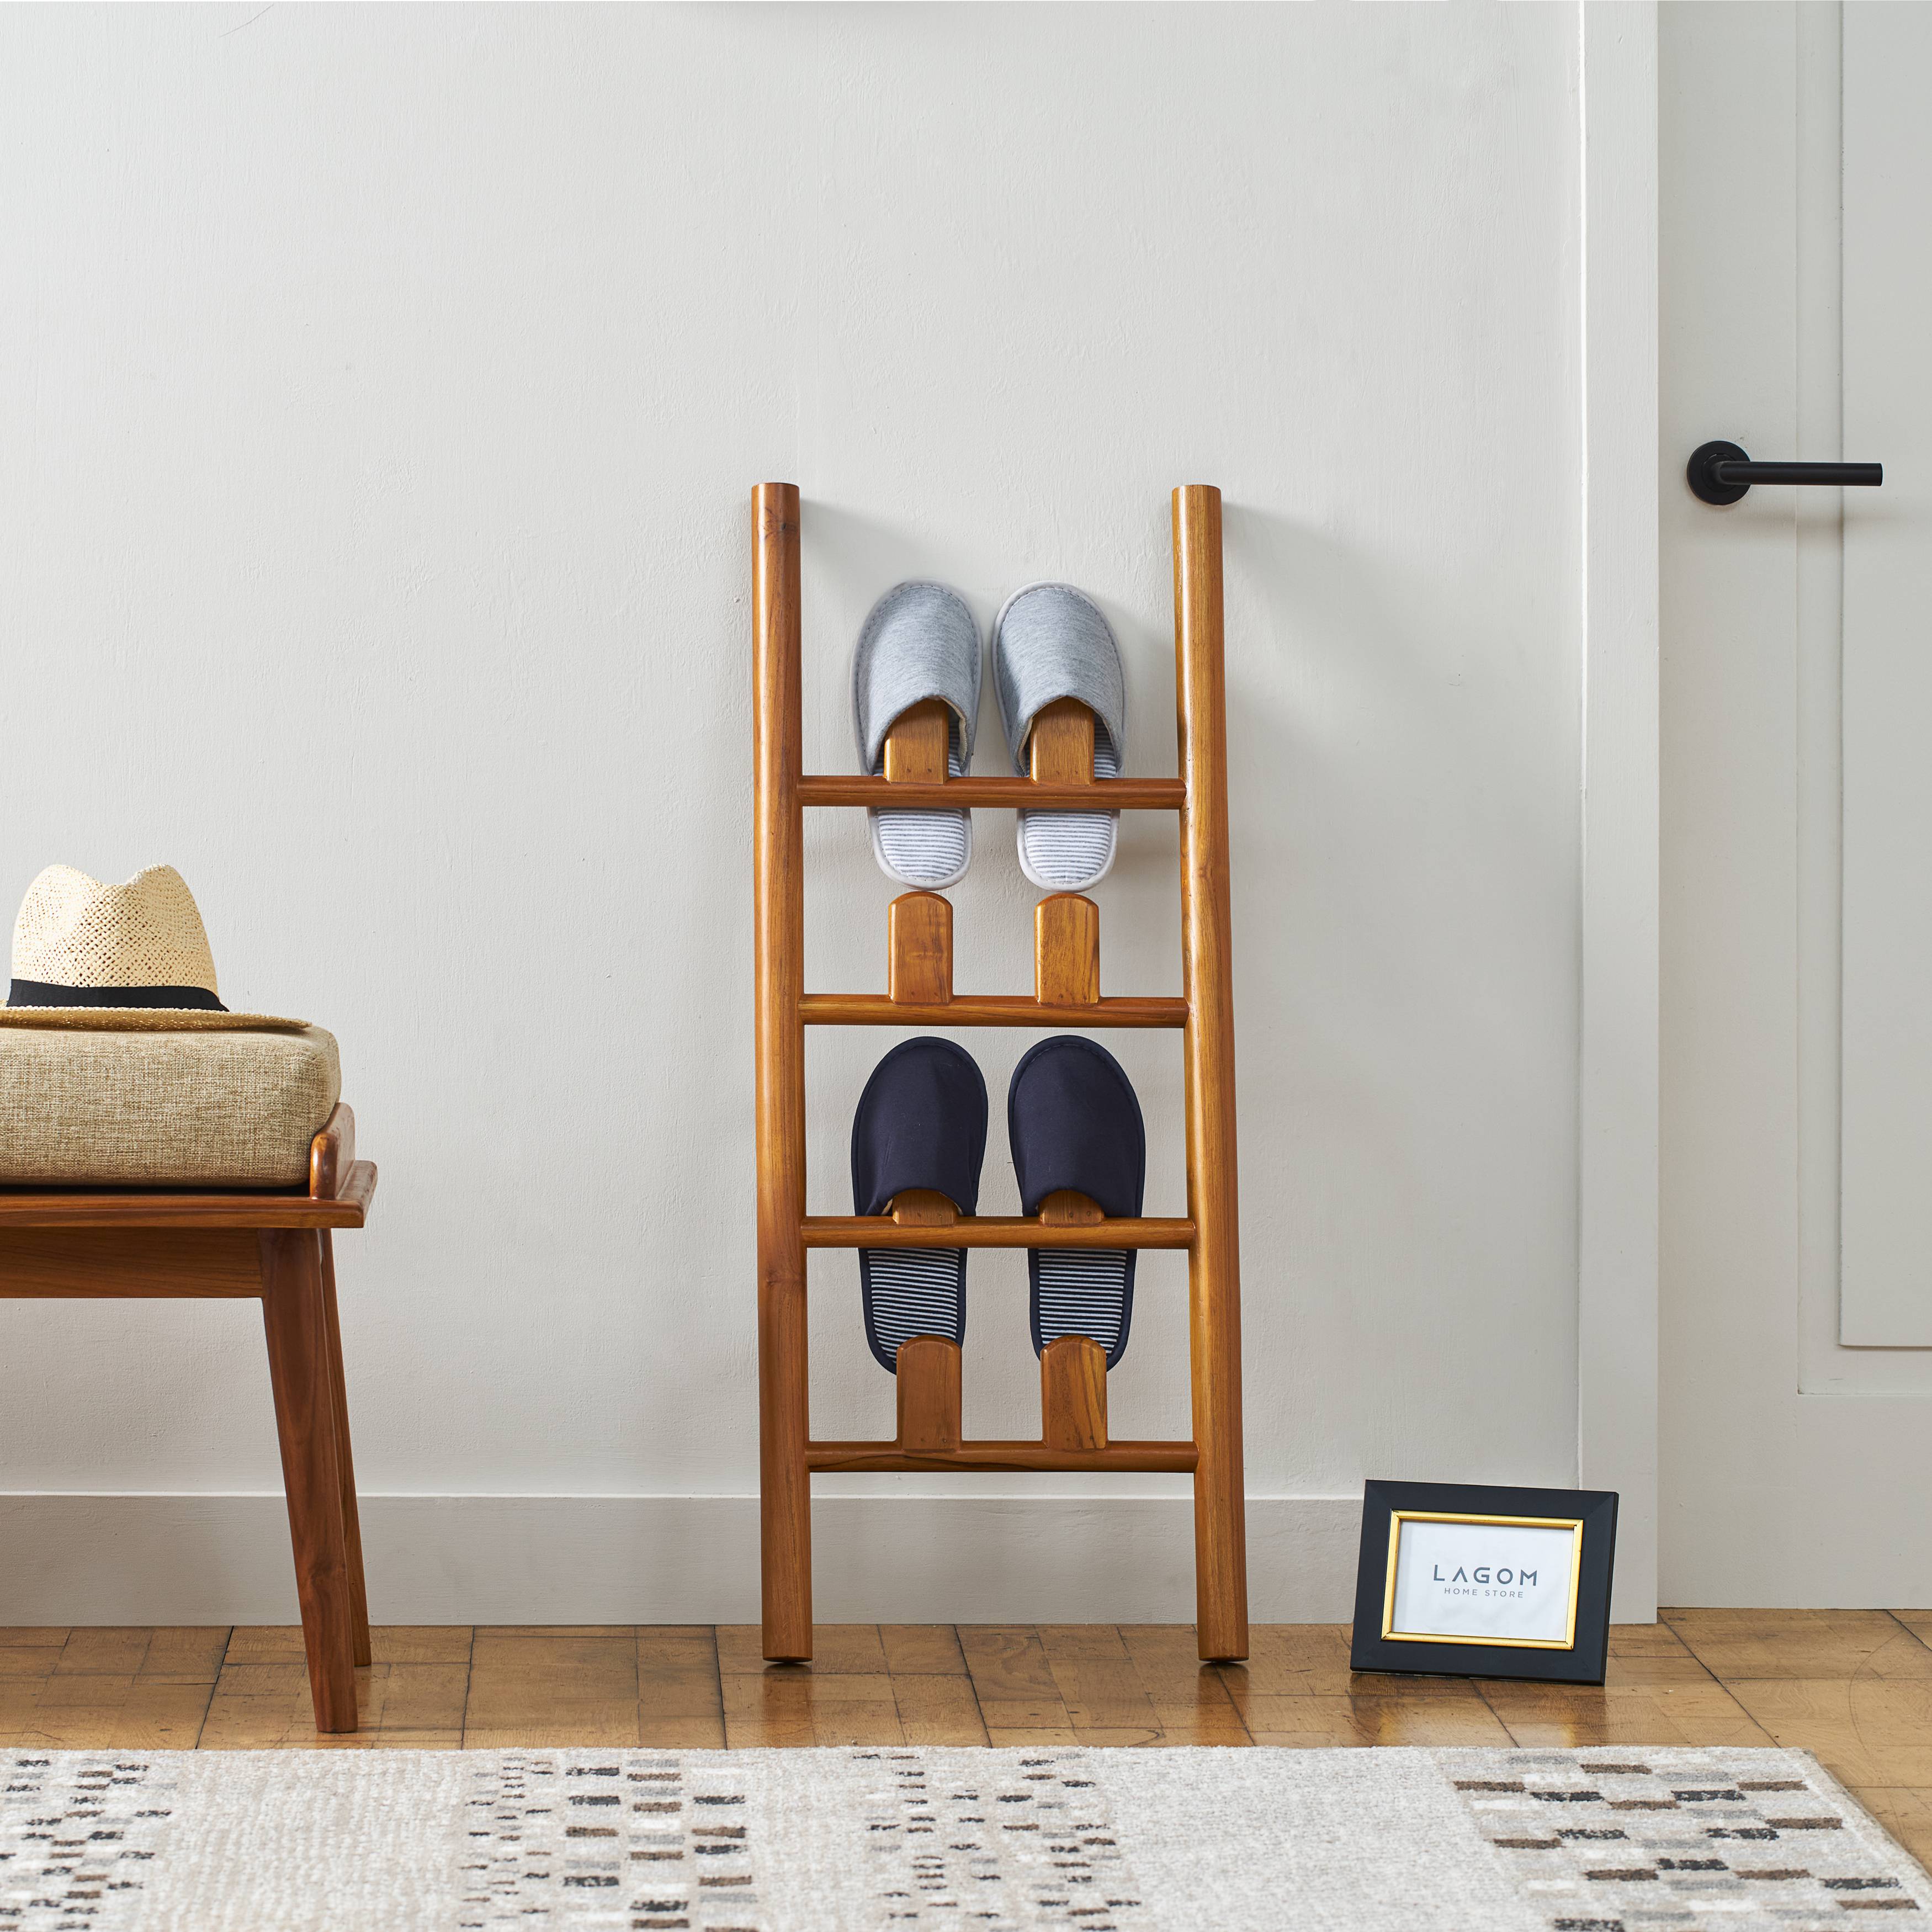 Rak Sepatu dan Sandal Desain Minimalis Shoe Rack Lagom Home Store Jati Furnitur Teak Furniture Jakarta